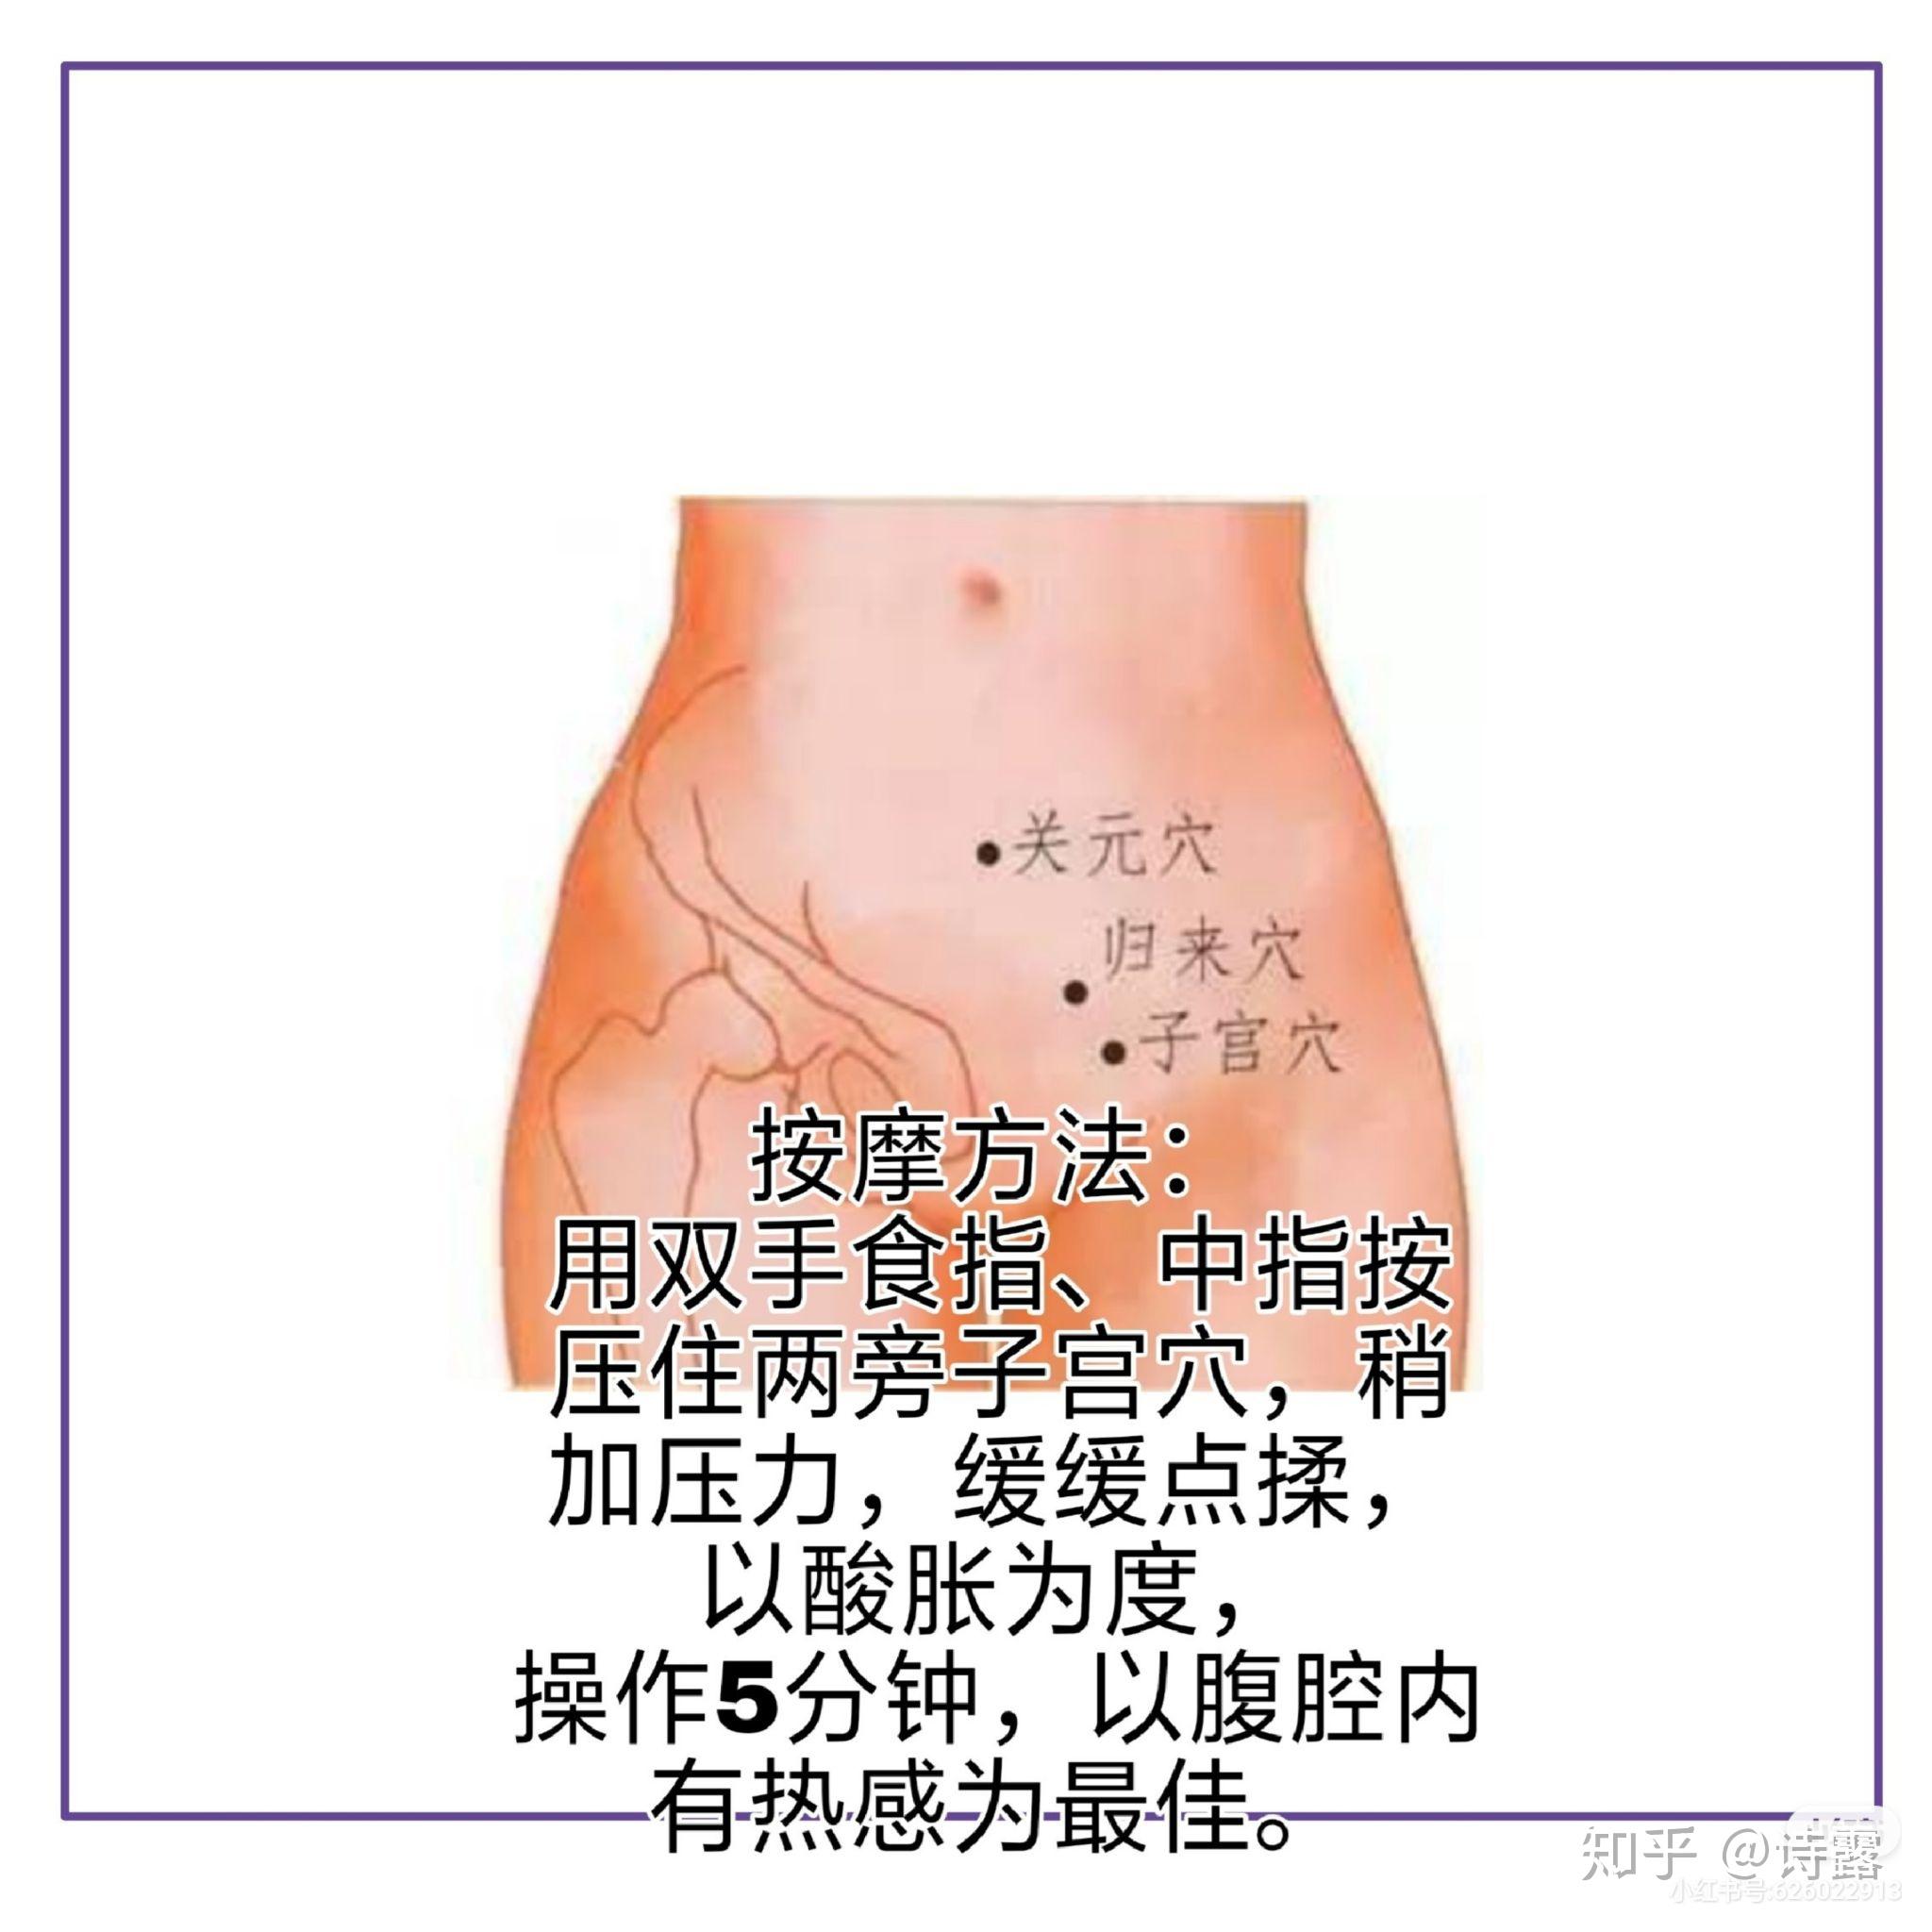 位置:子宫穴位于下腹部,脐下一横掌处(脐下4寸)正中